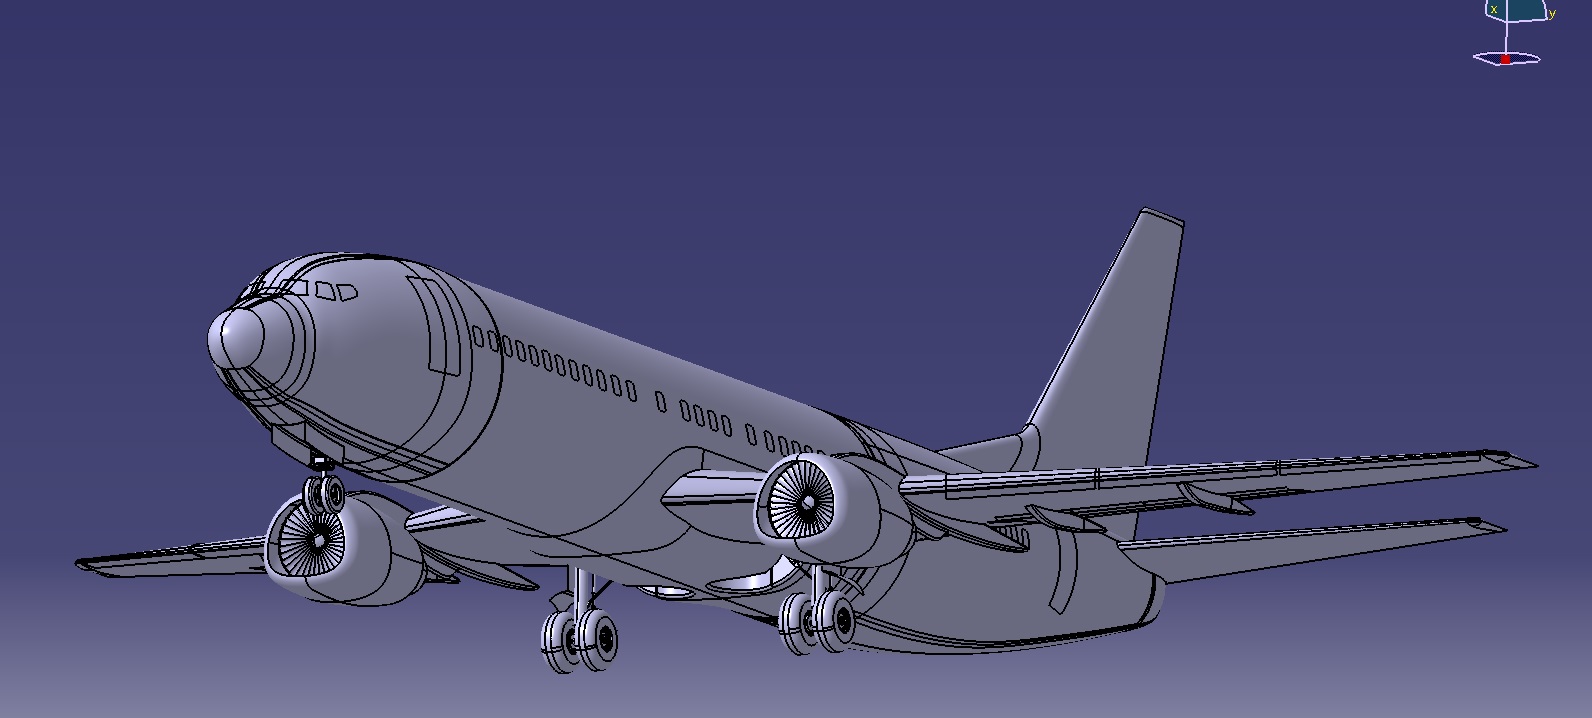 波音737-400飞机简易